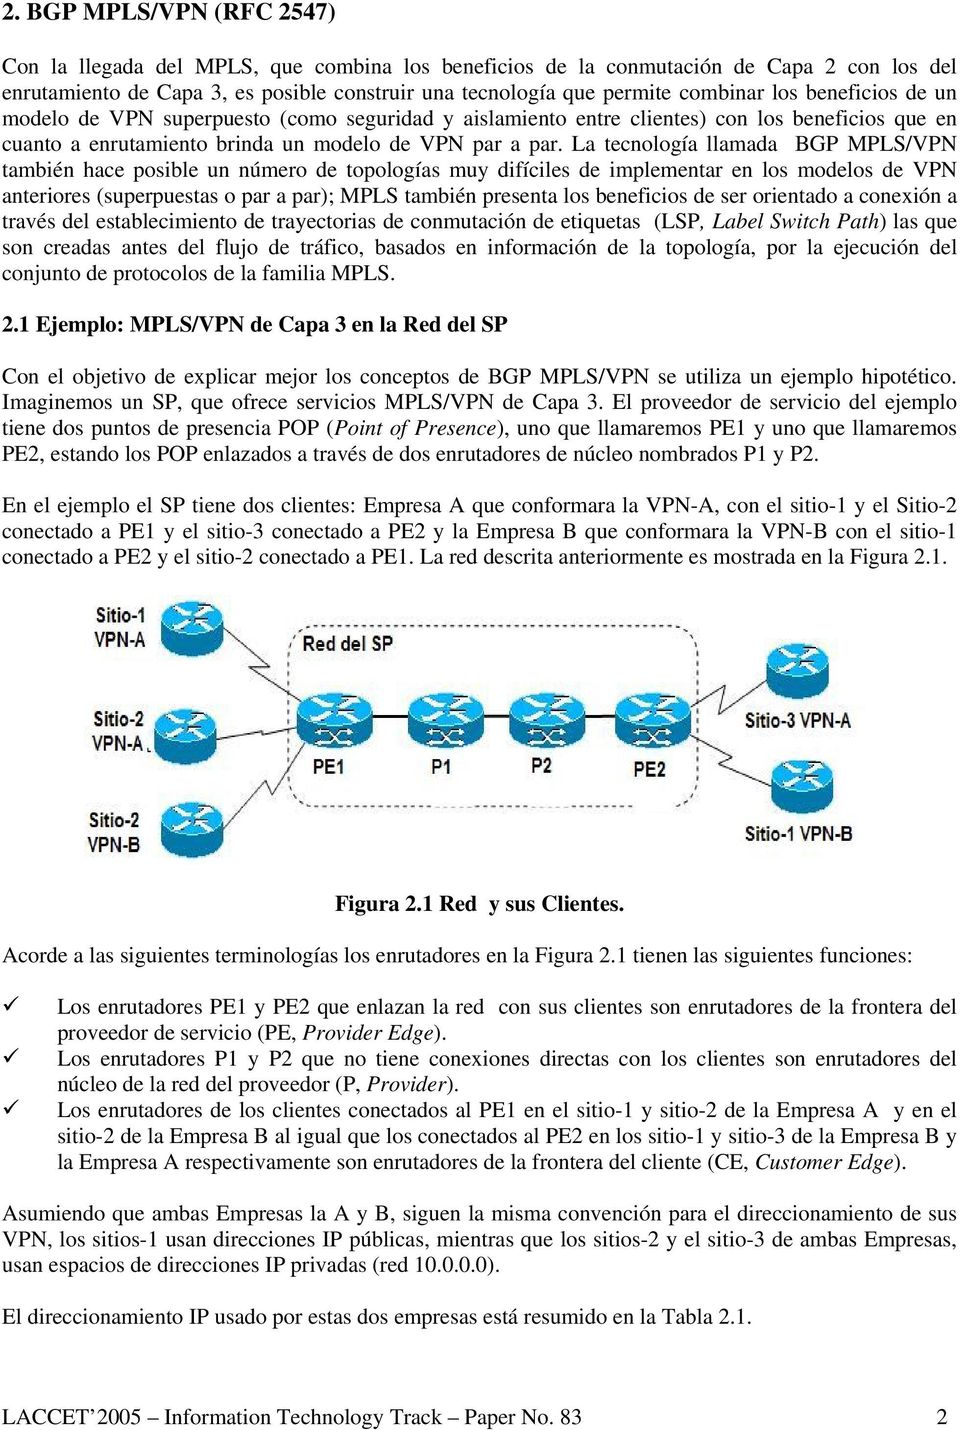 La tecnología llamada BGP MPLS/VPN también hace posible un número de topologías muy difíciles de implementar en los modelos de VPN anteriores (superpuestas o par a par); MPLS también presenta los